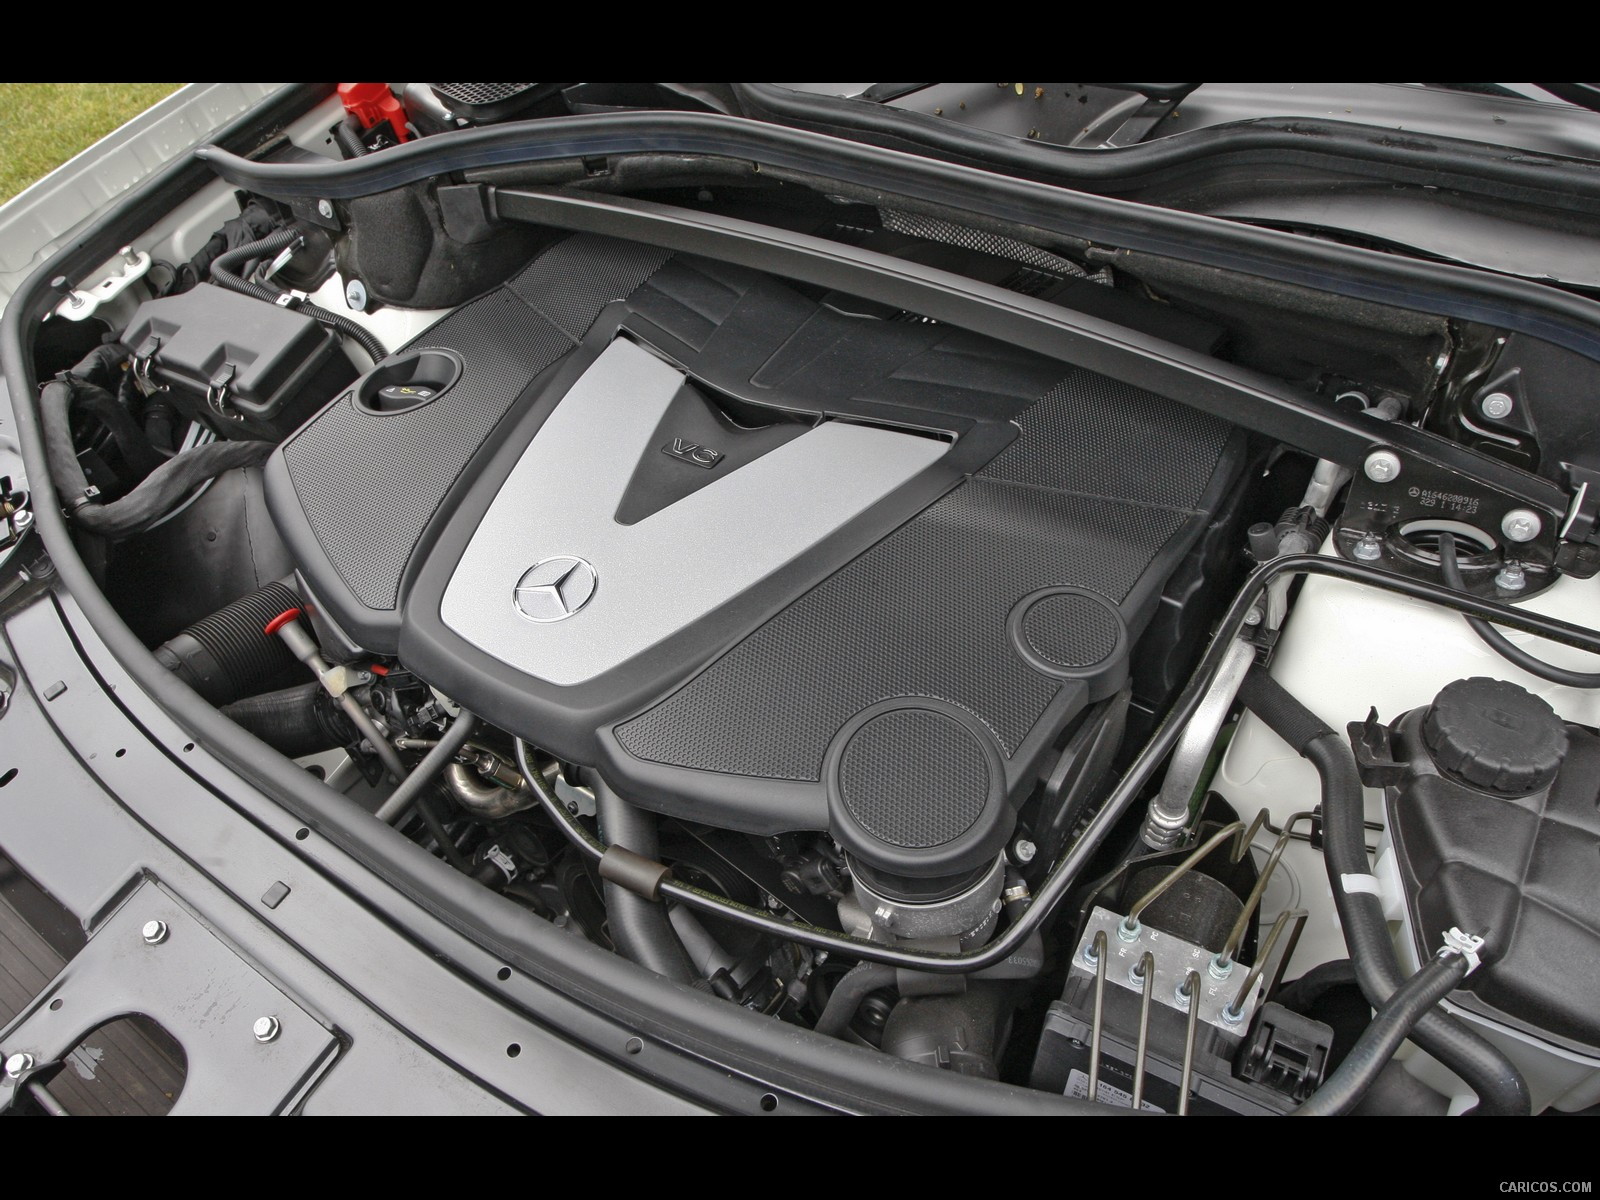 2010 Mercedes-Benz GL350 BlueTEC - Engine, #34 of 112